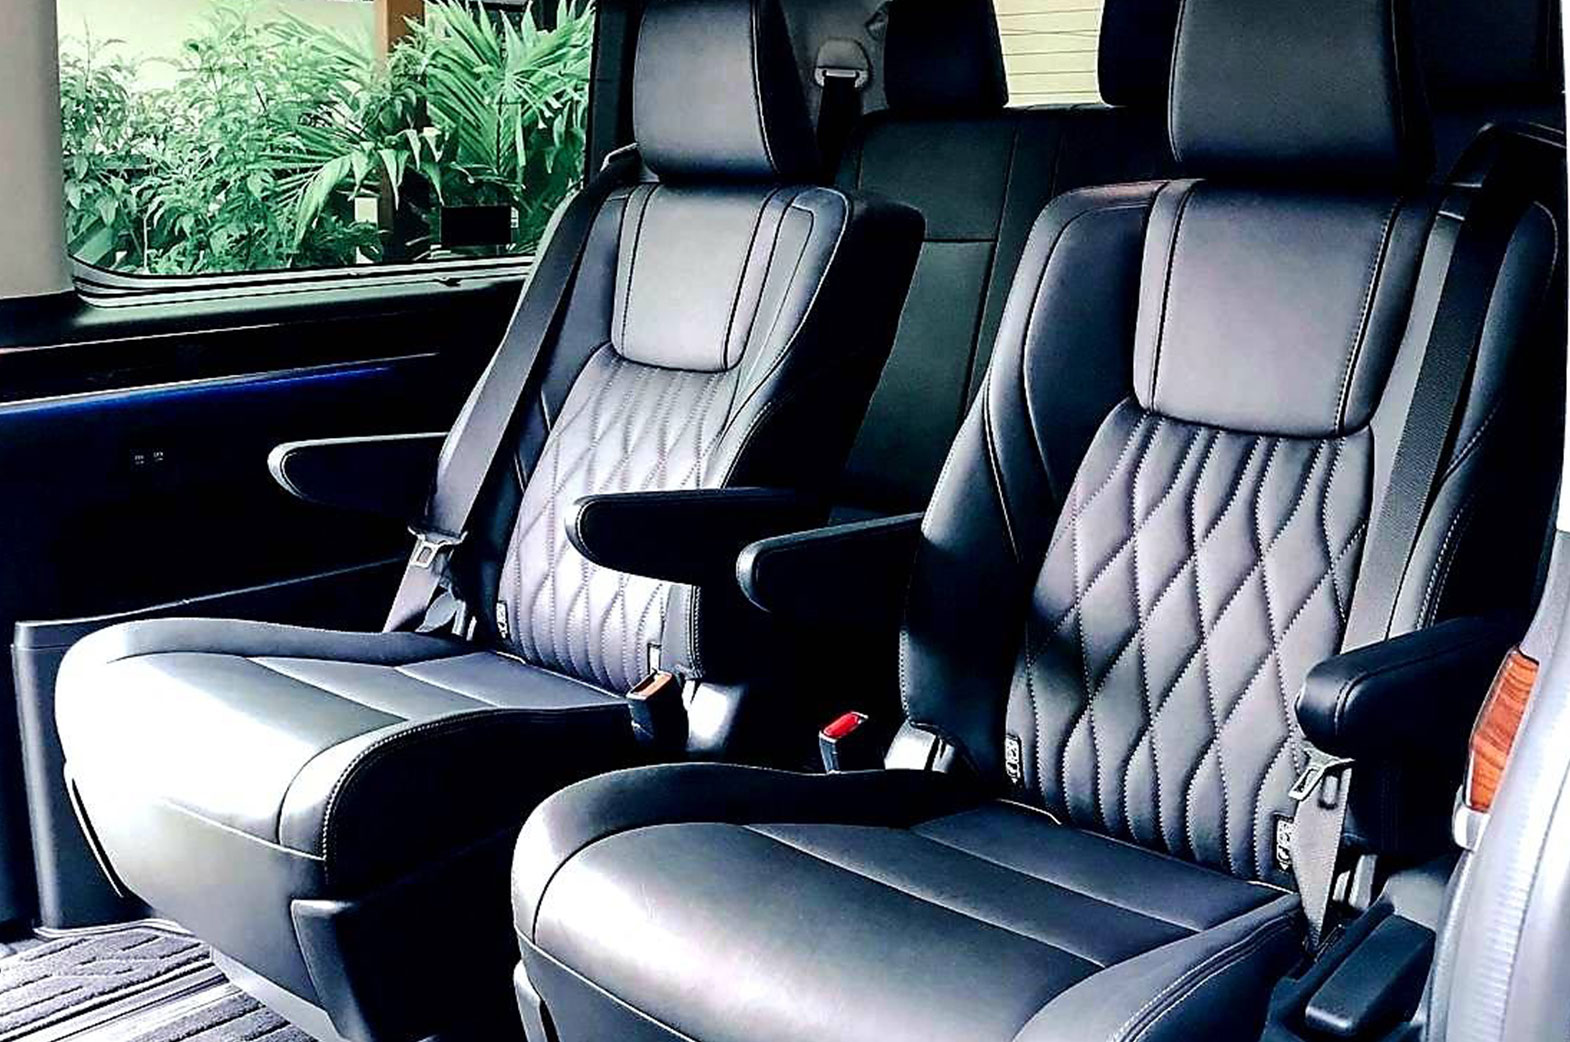 Luxury Van 8 seats